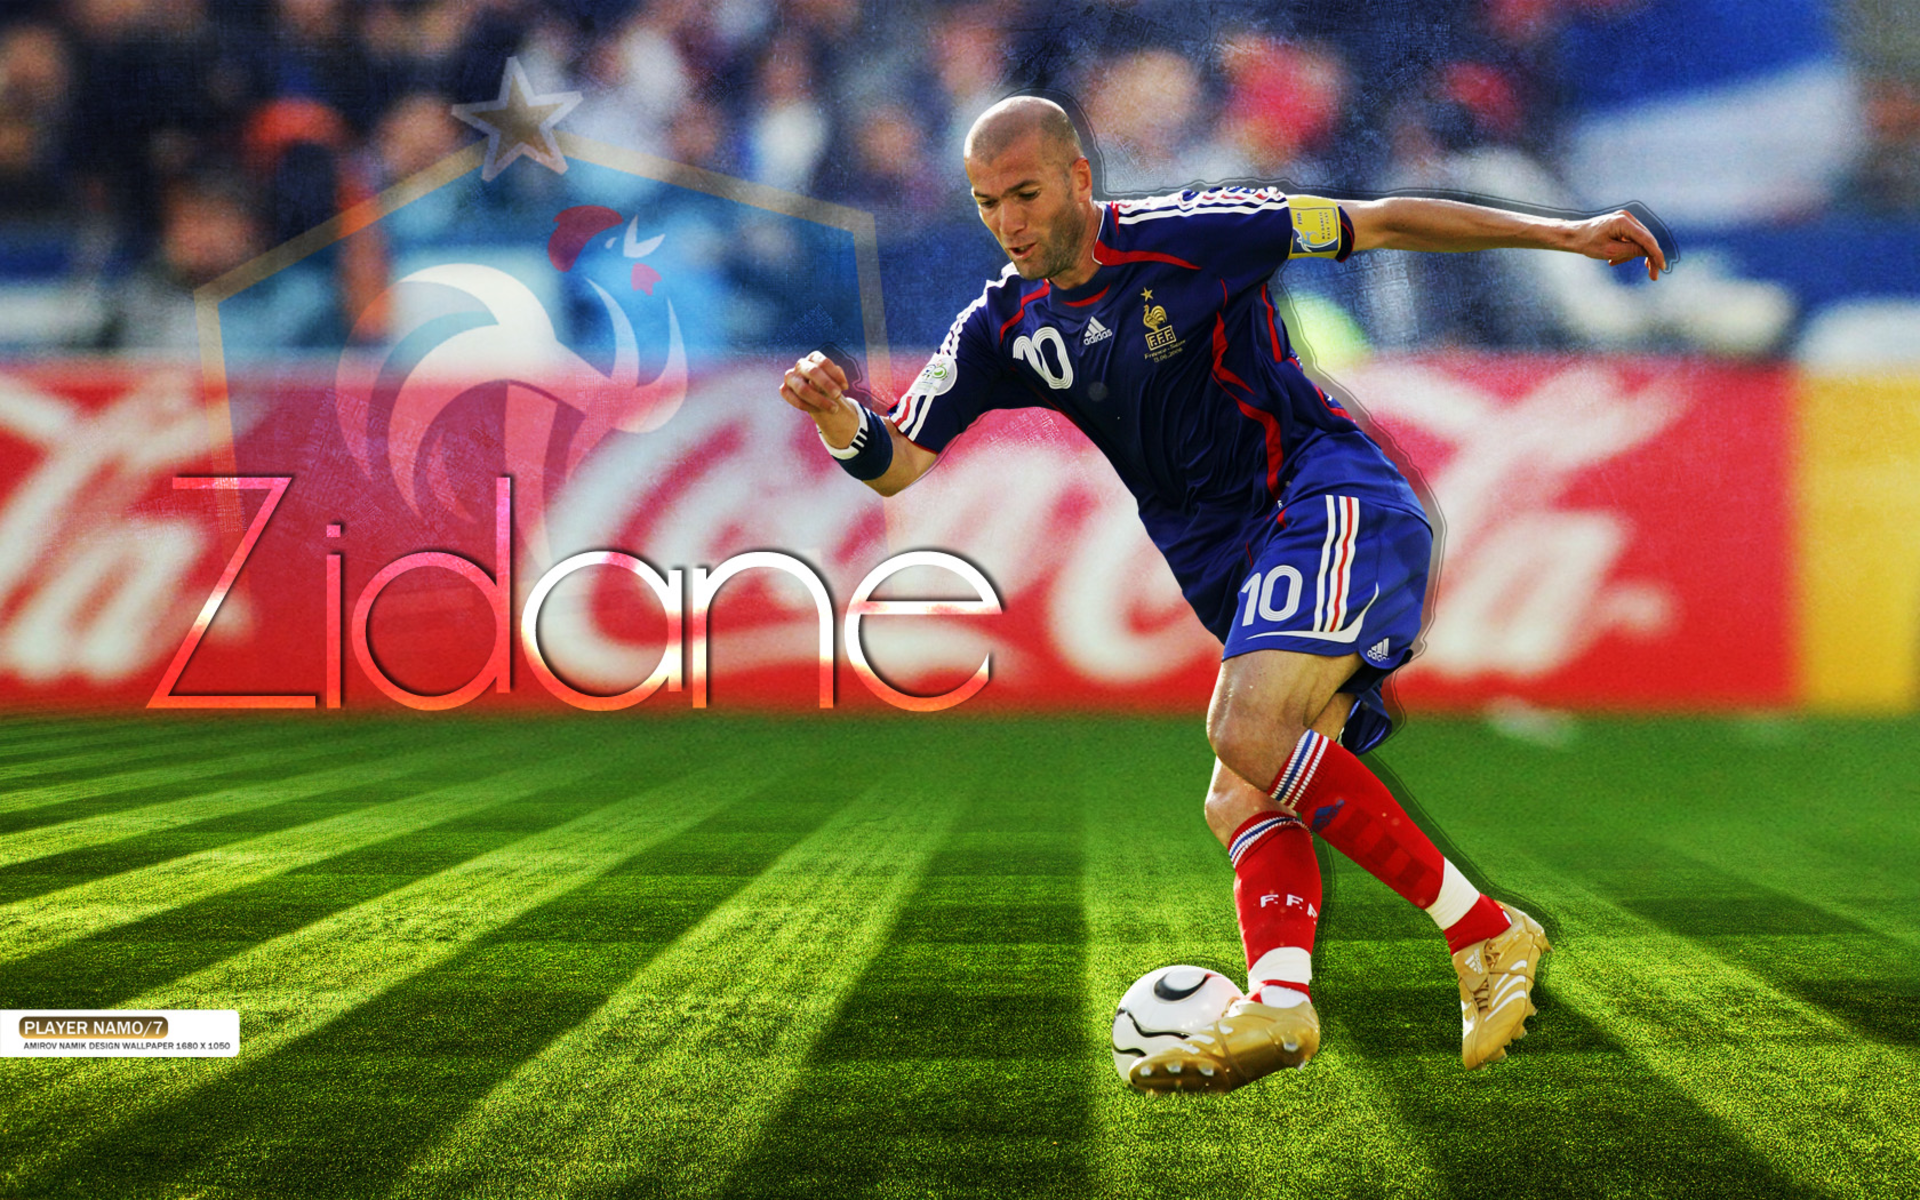 Sports Zinedine Zidane HD Wallpaper Background Image. 